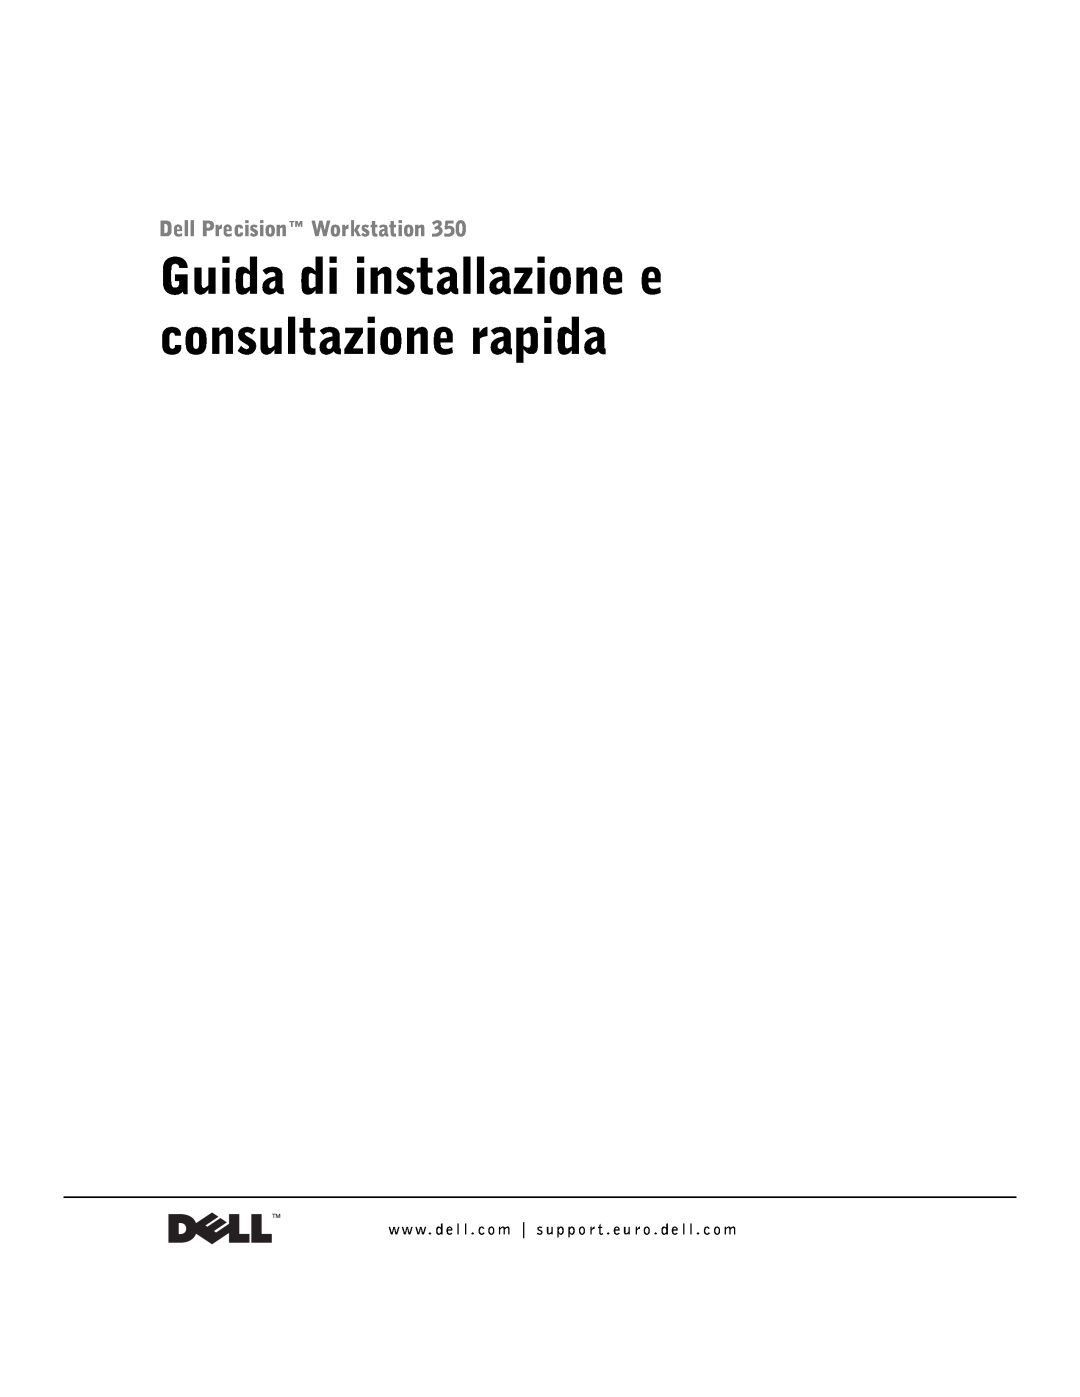 Dell 9T217 manual Guida di installazione e consultazione rapida, Dell Precision Workstation 